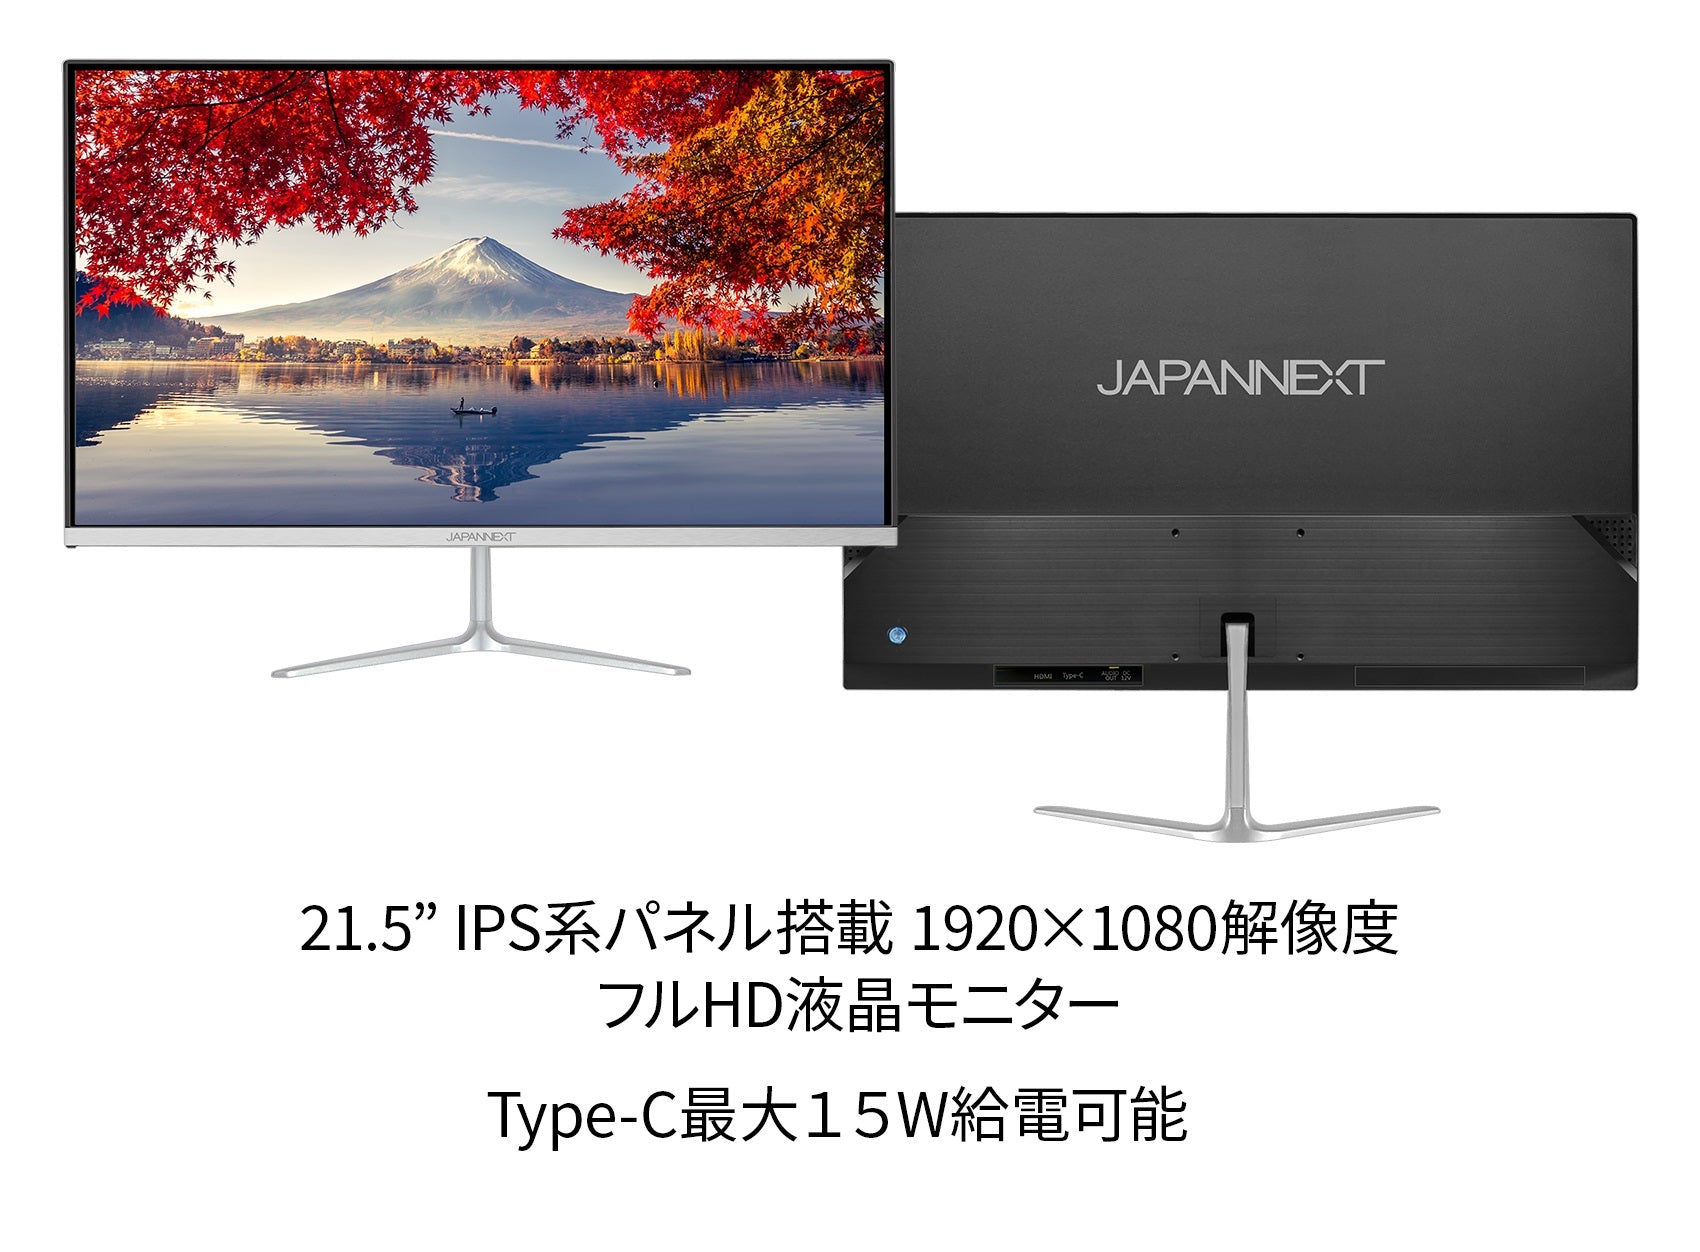 JAPANNEXT 21.5型 フルHD(1920x1080) 液晶モニター